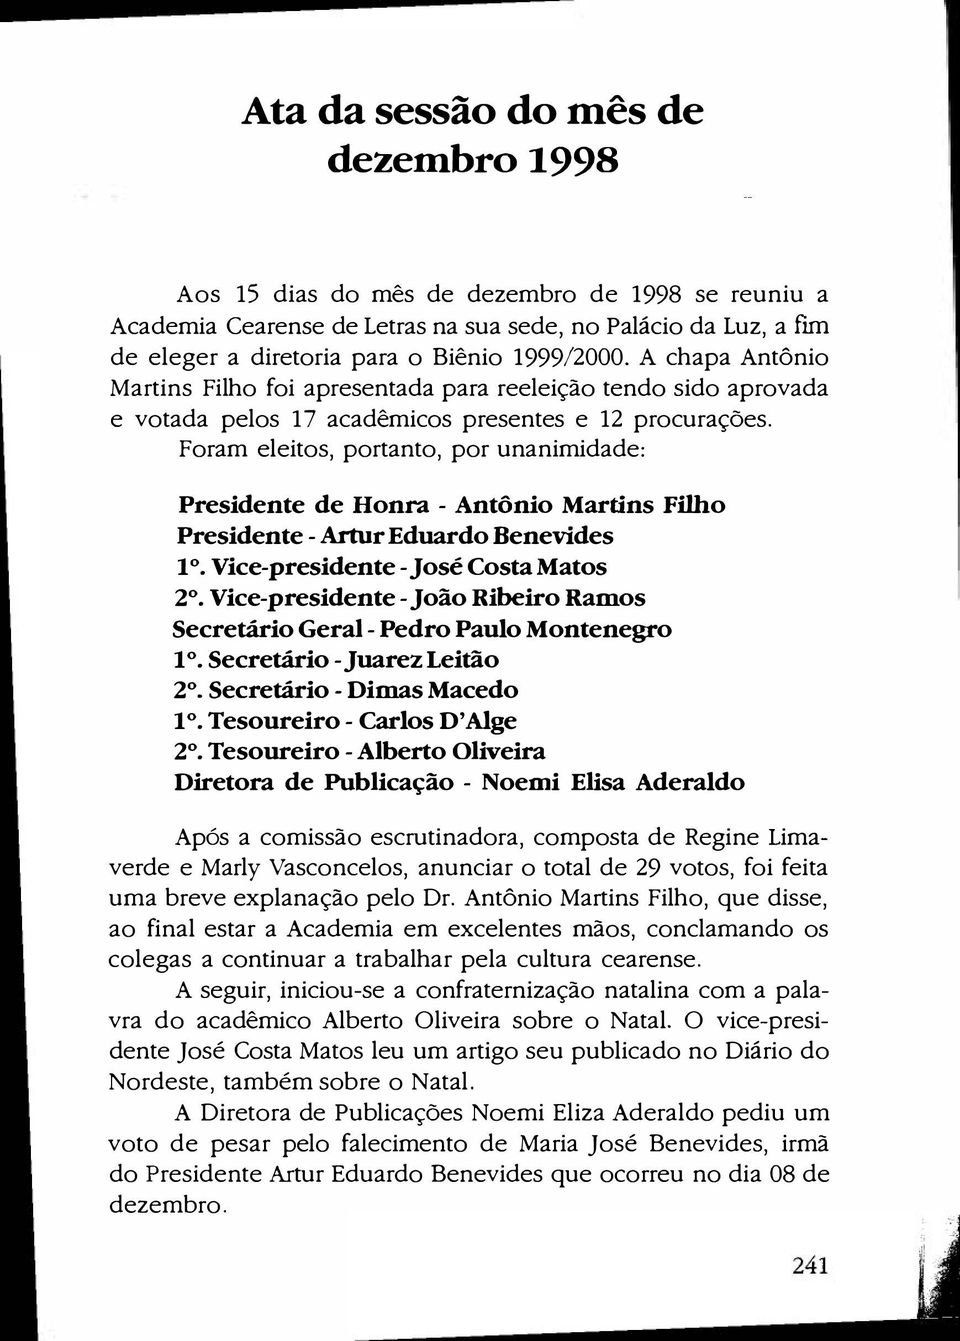 Foram eleitos, portanto, por unanimidade: Presidente de Honra - Antônio Martins Filho Presidente-Artur Eduardo Benevides 1. Vice-presidente-José Costa Matos 2.